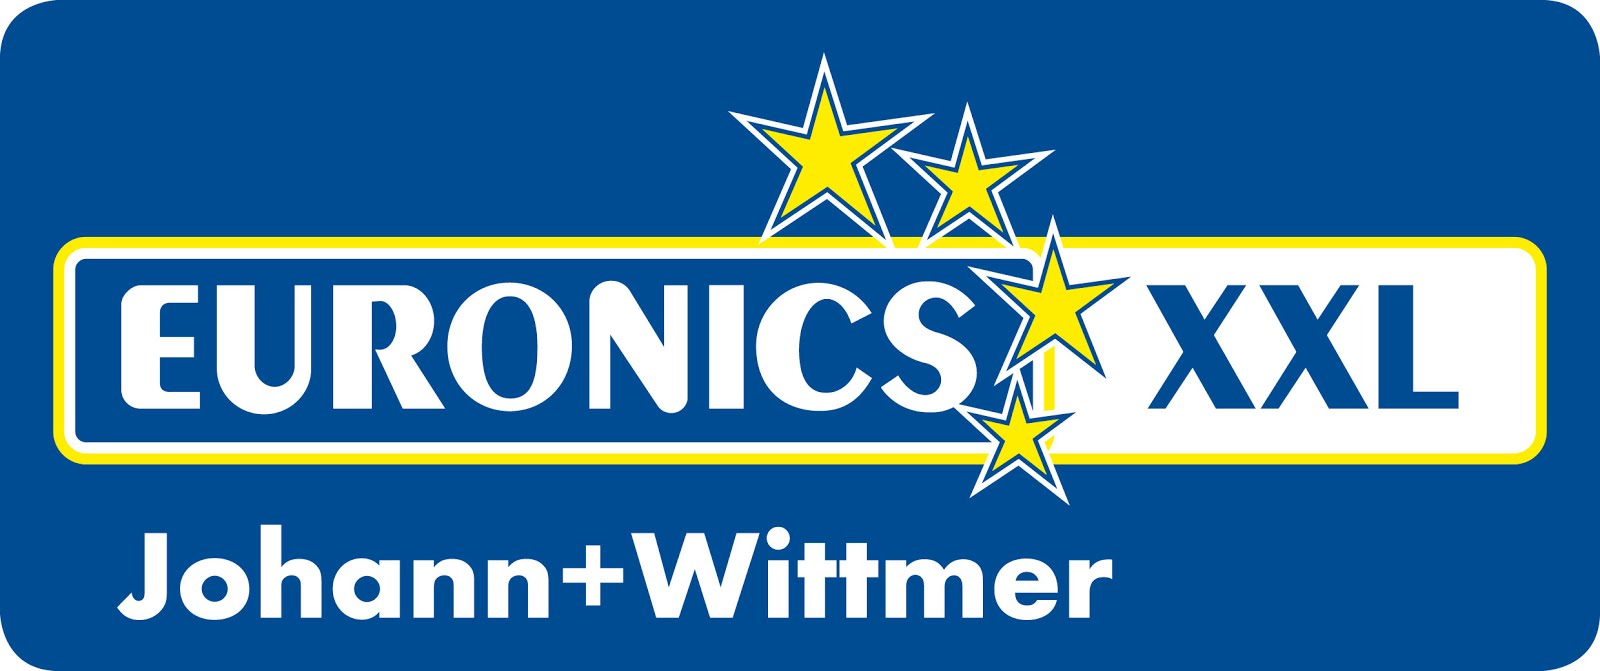 Euronics XXL Johann + Wittmer